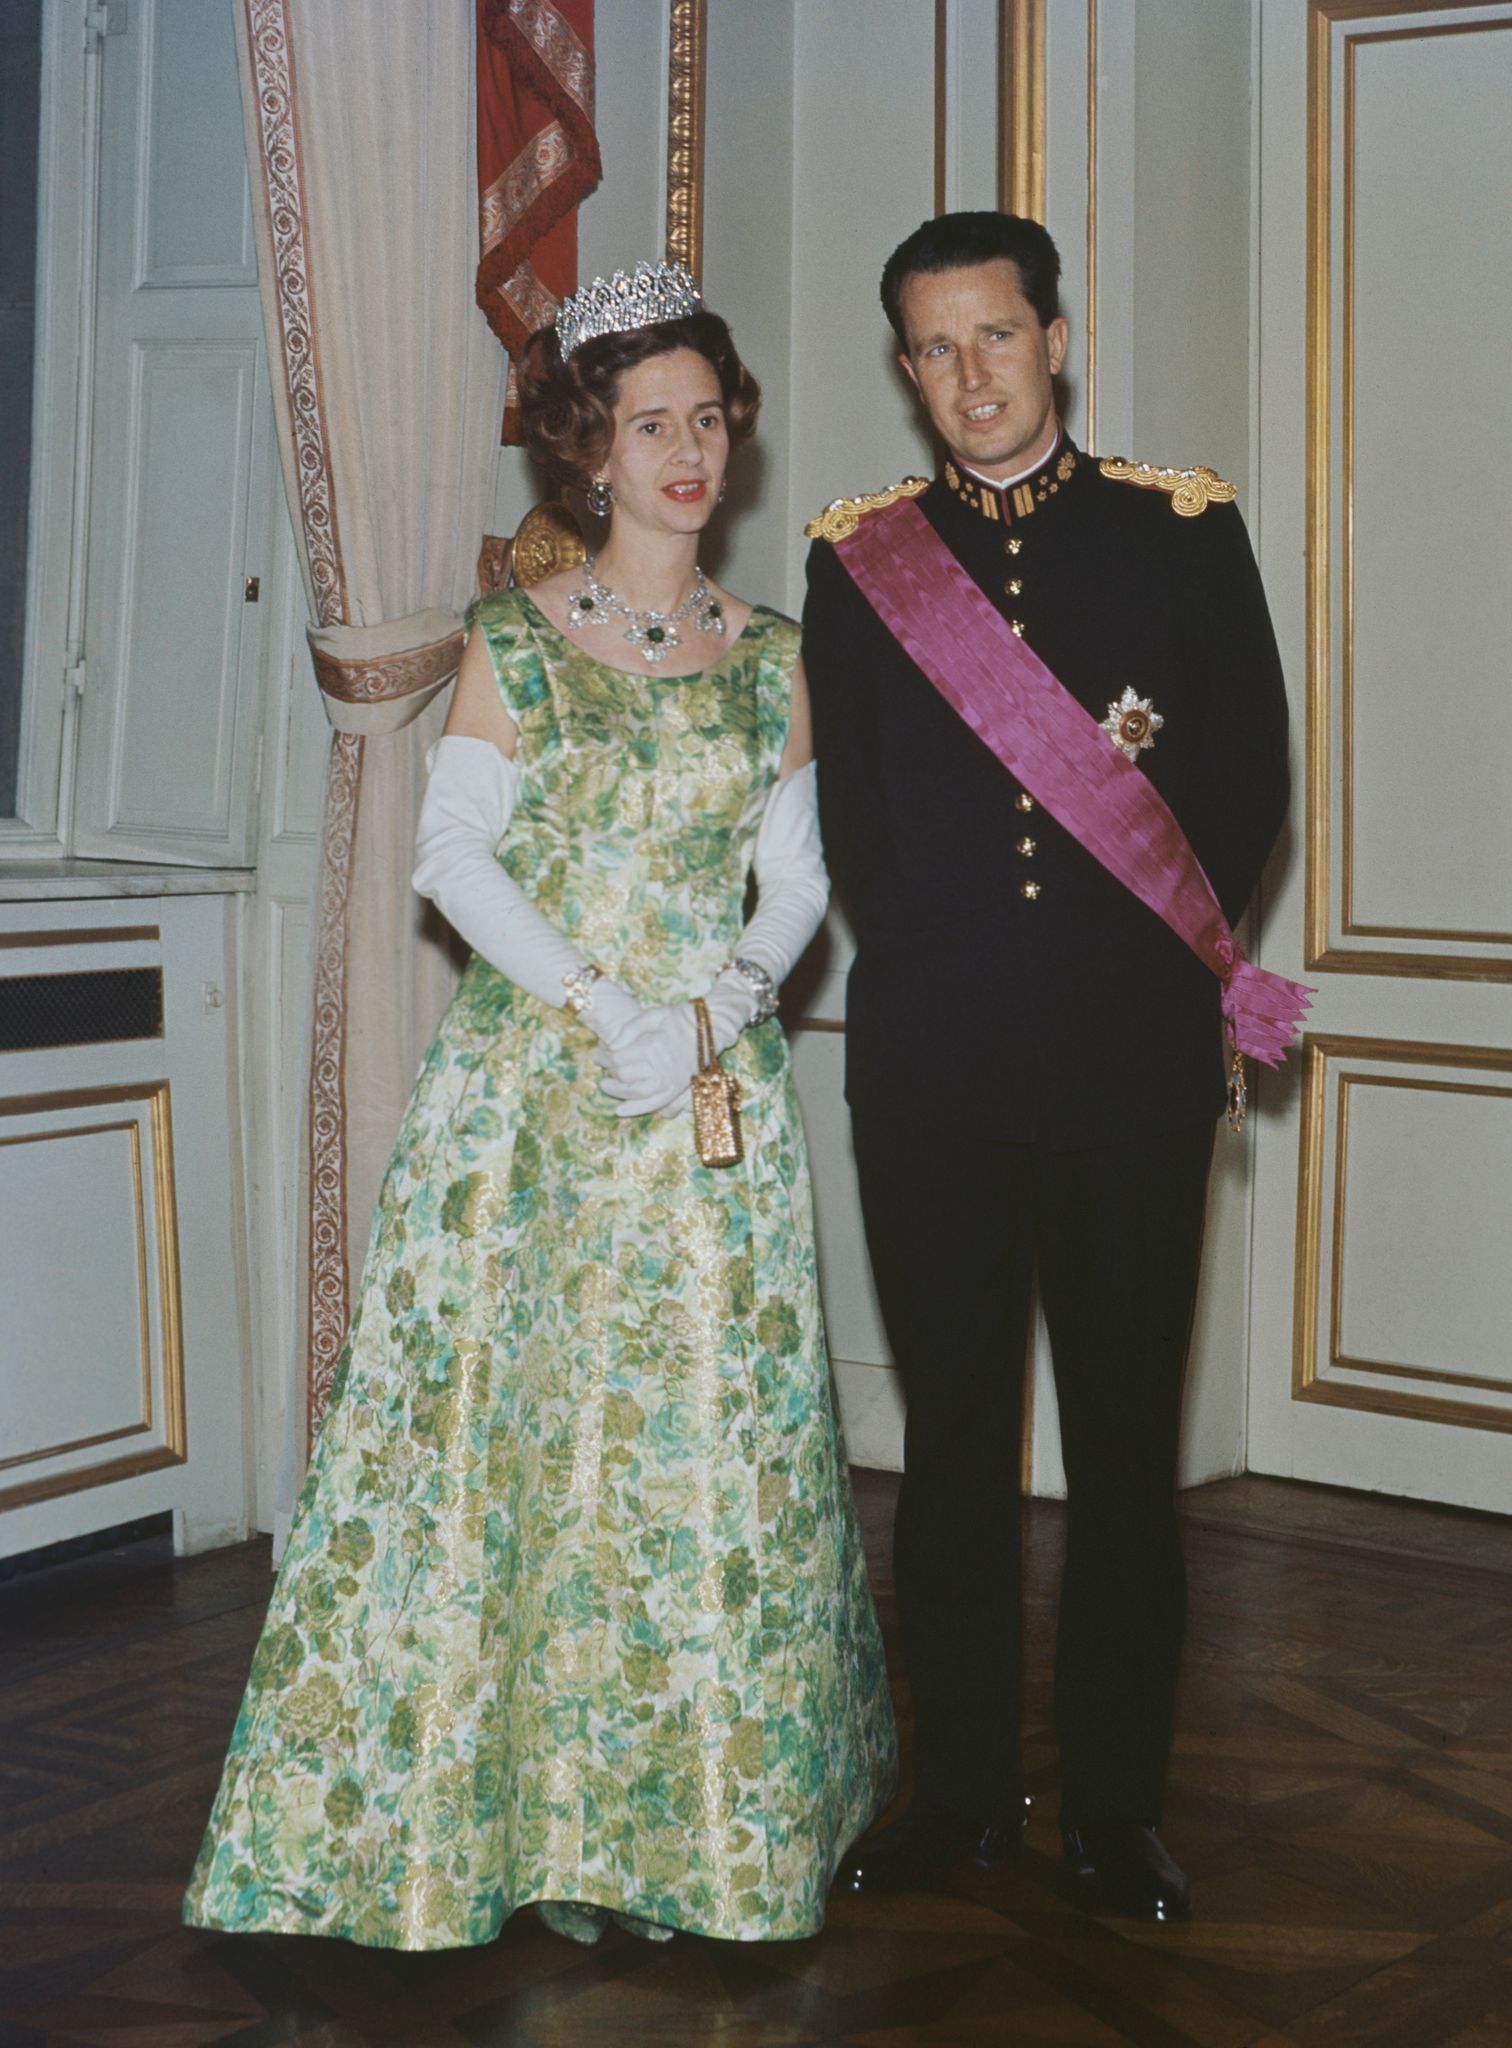 Fabiola de Mora y Aragón y el rey Balduino I de Bélgica en un evento oficial en 1966. │Foto: Getty Images